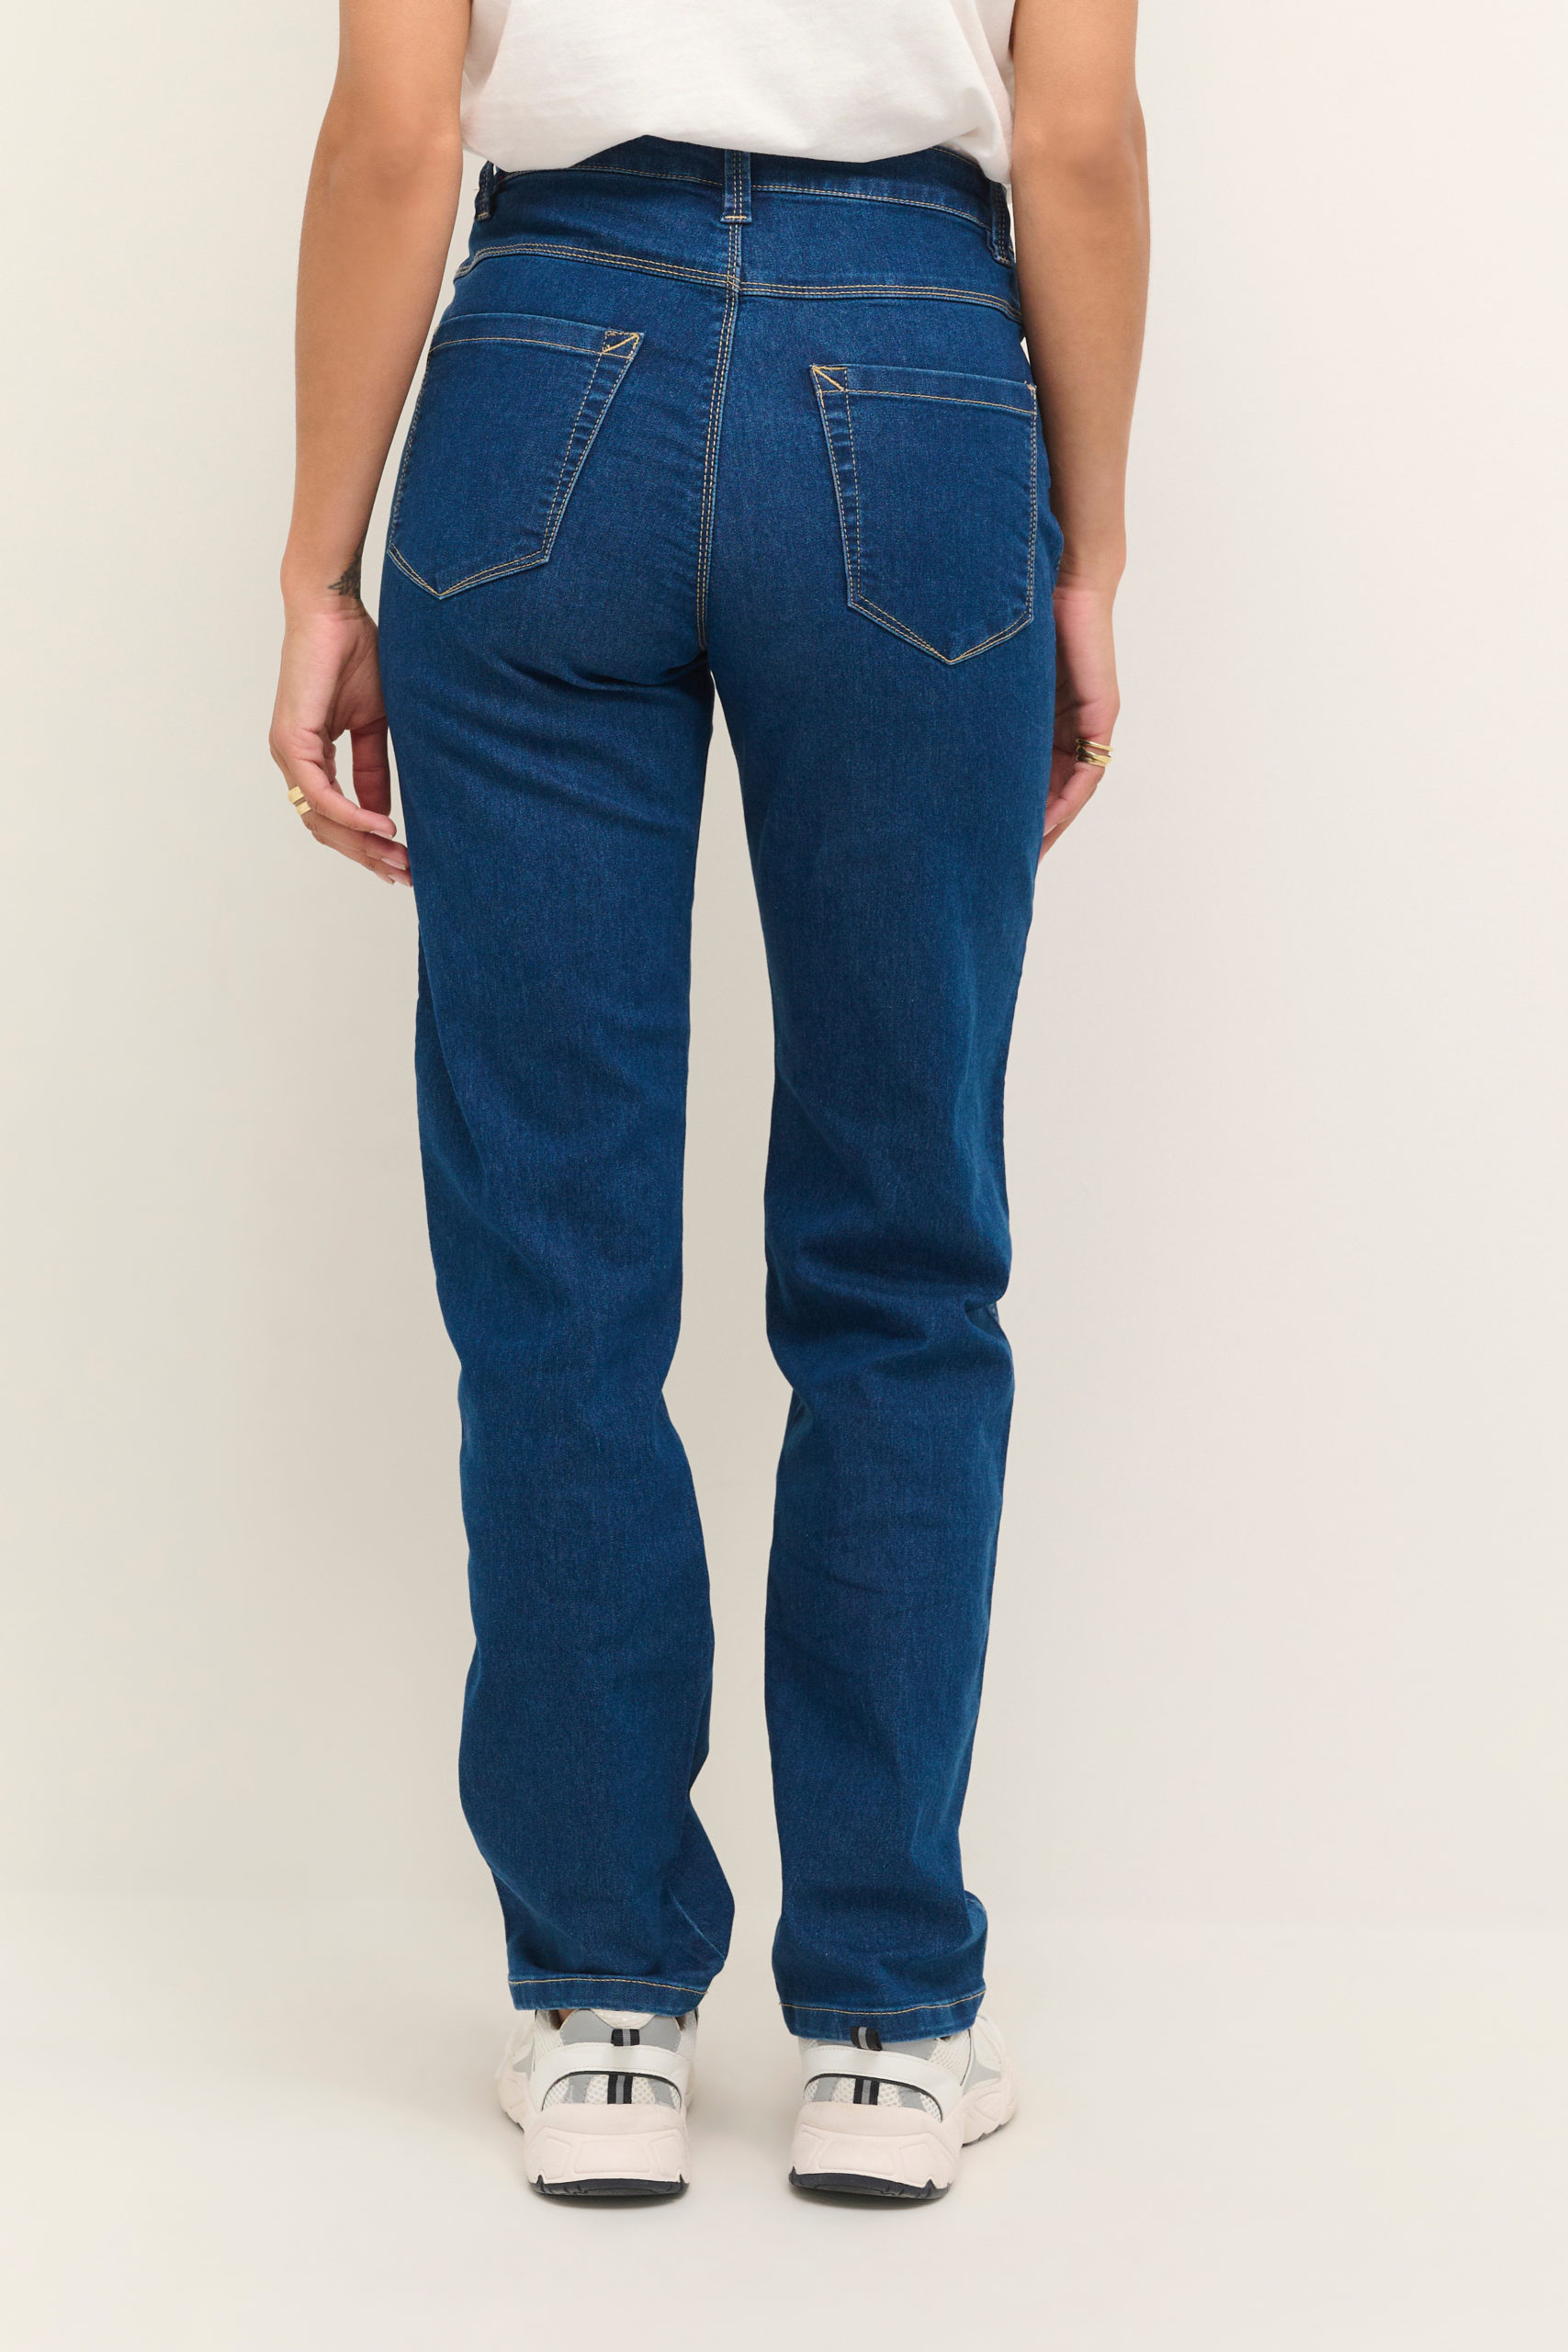 KAvicky Straight Blue Jeans back